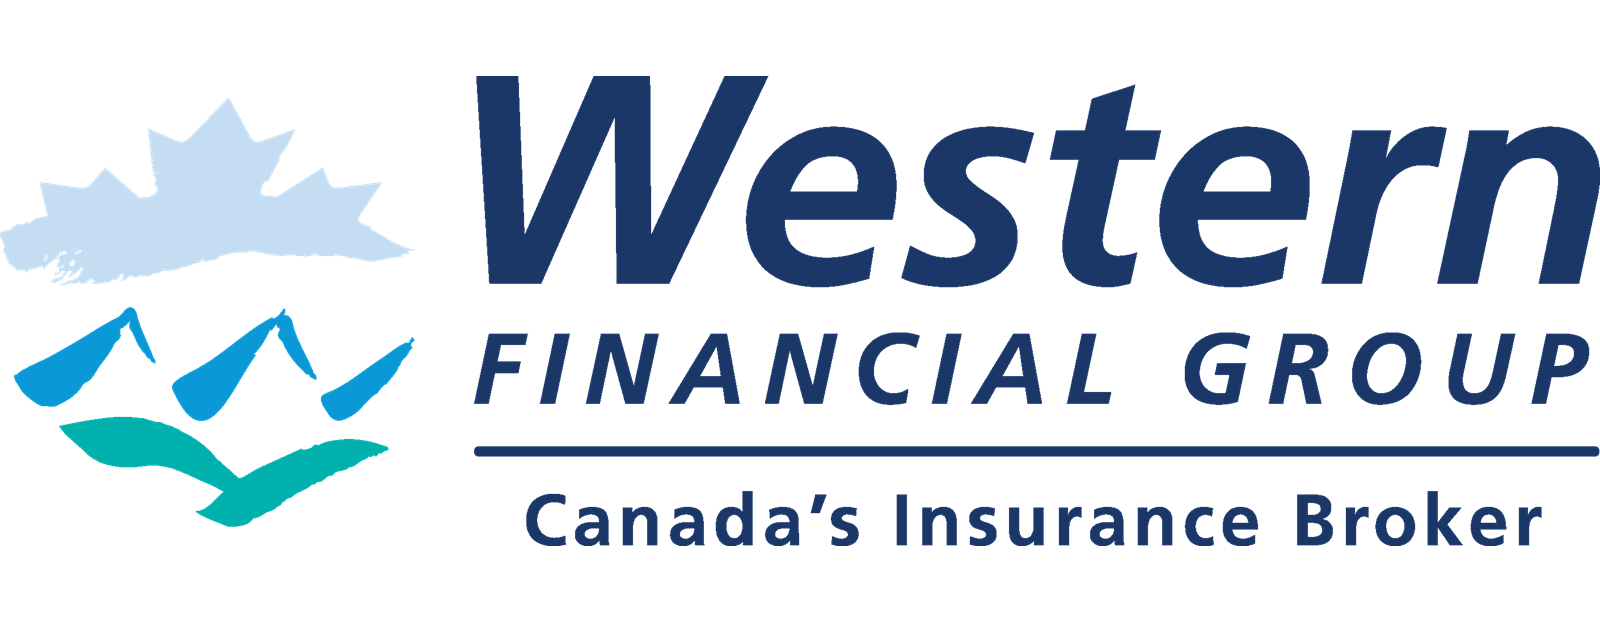 CAAR Perk$ Profile for Western Financial Group